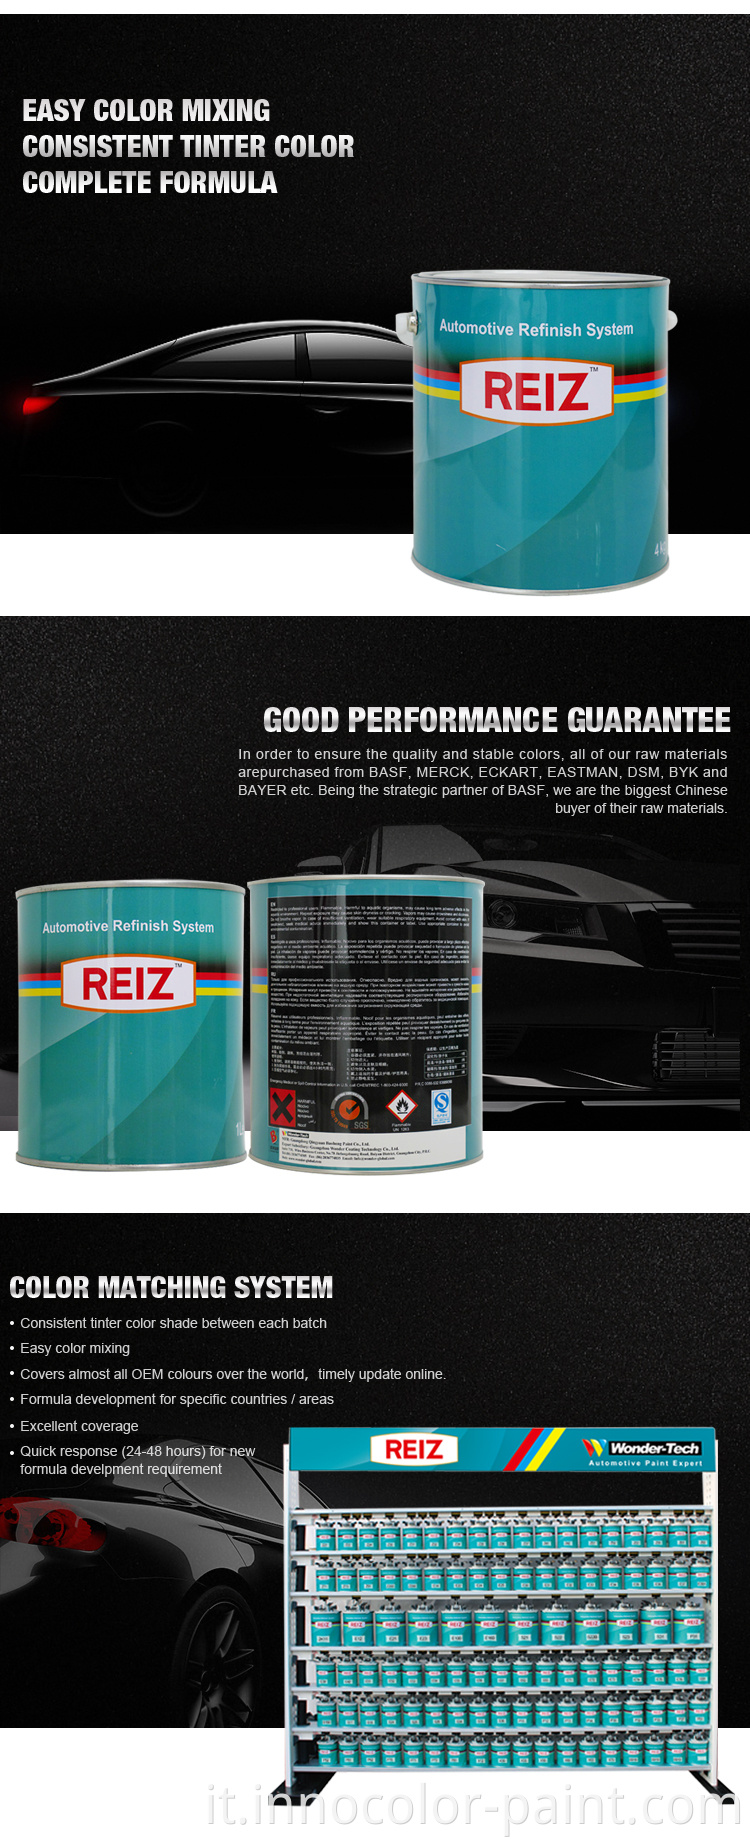 Auto Vernice fabbrica Reiz di alta qualità Autobody Repair Auto Refinish Paint 2K Sessicamento veloce Vernice per auto trasparente